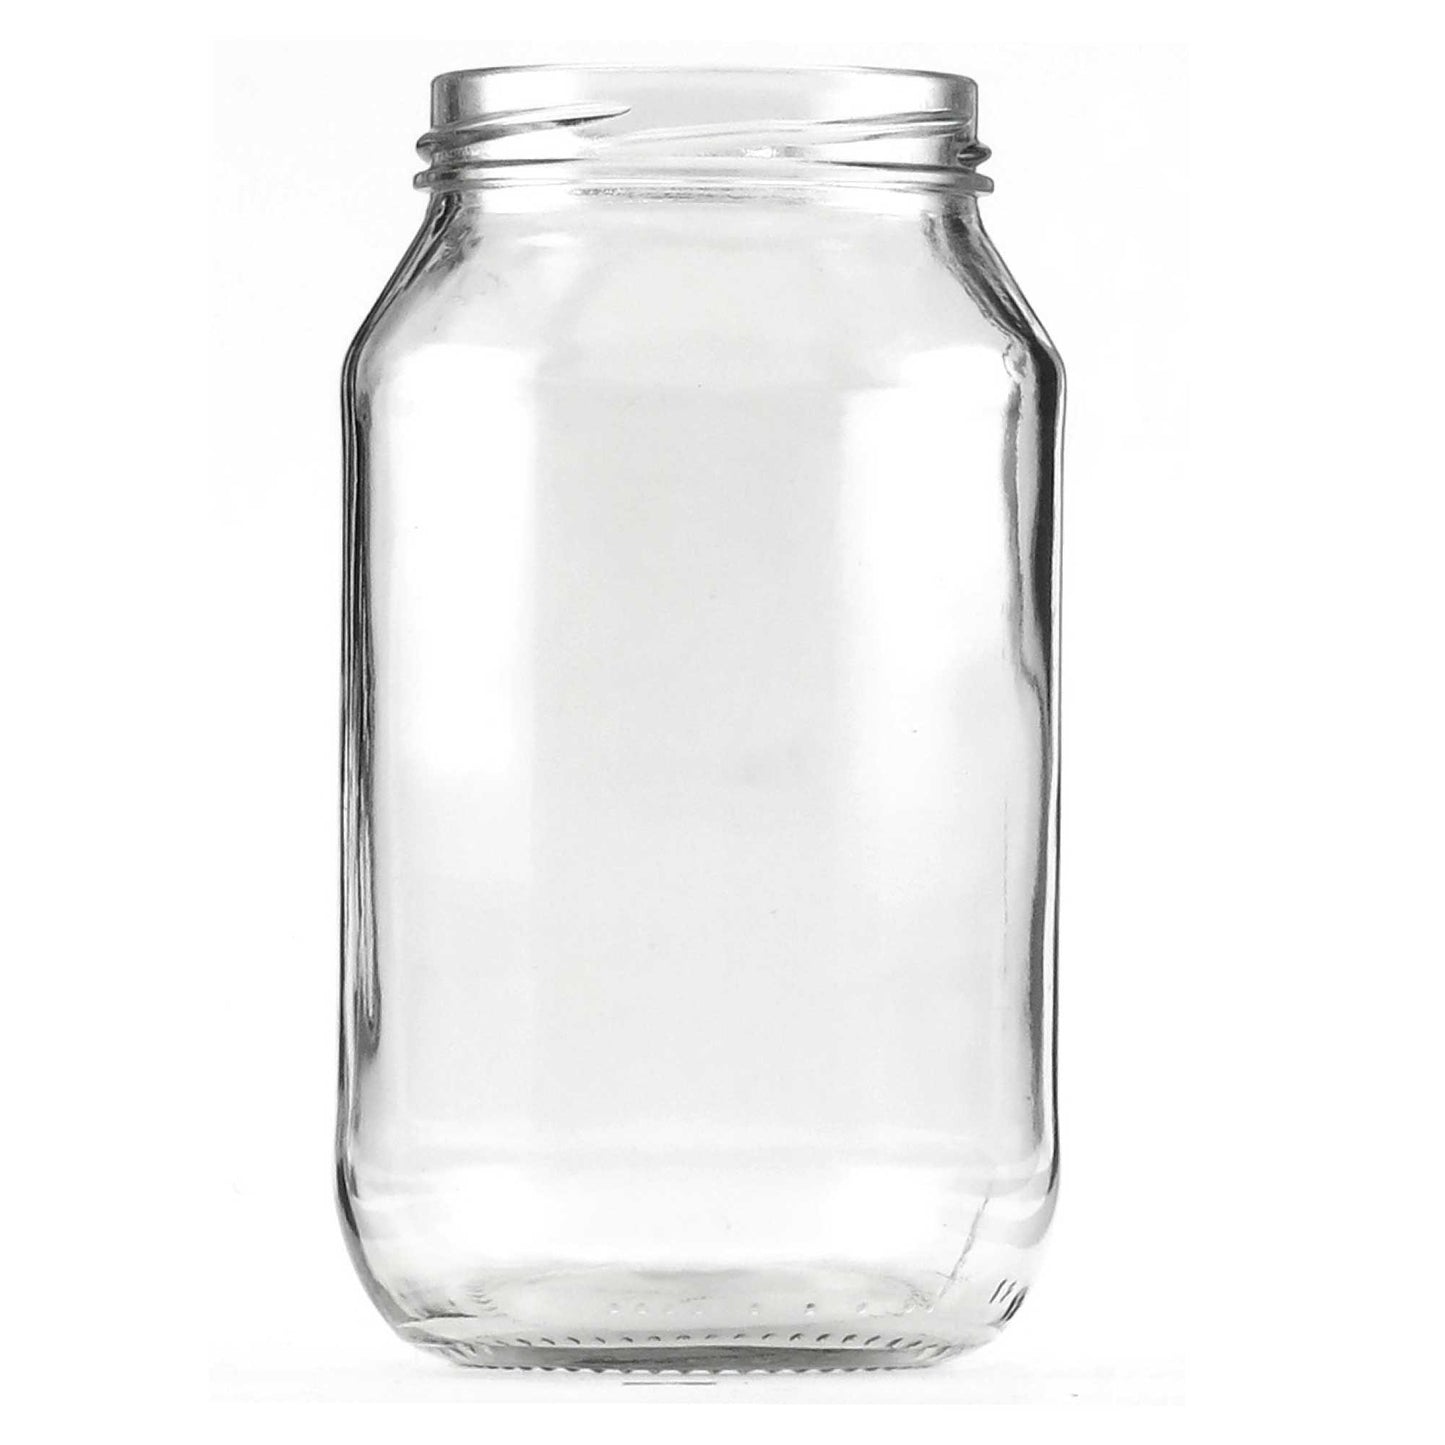 10x 1L Flint Glass Jars + Twist Finish Lids - Round Food Storage Preserving